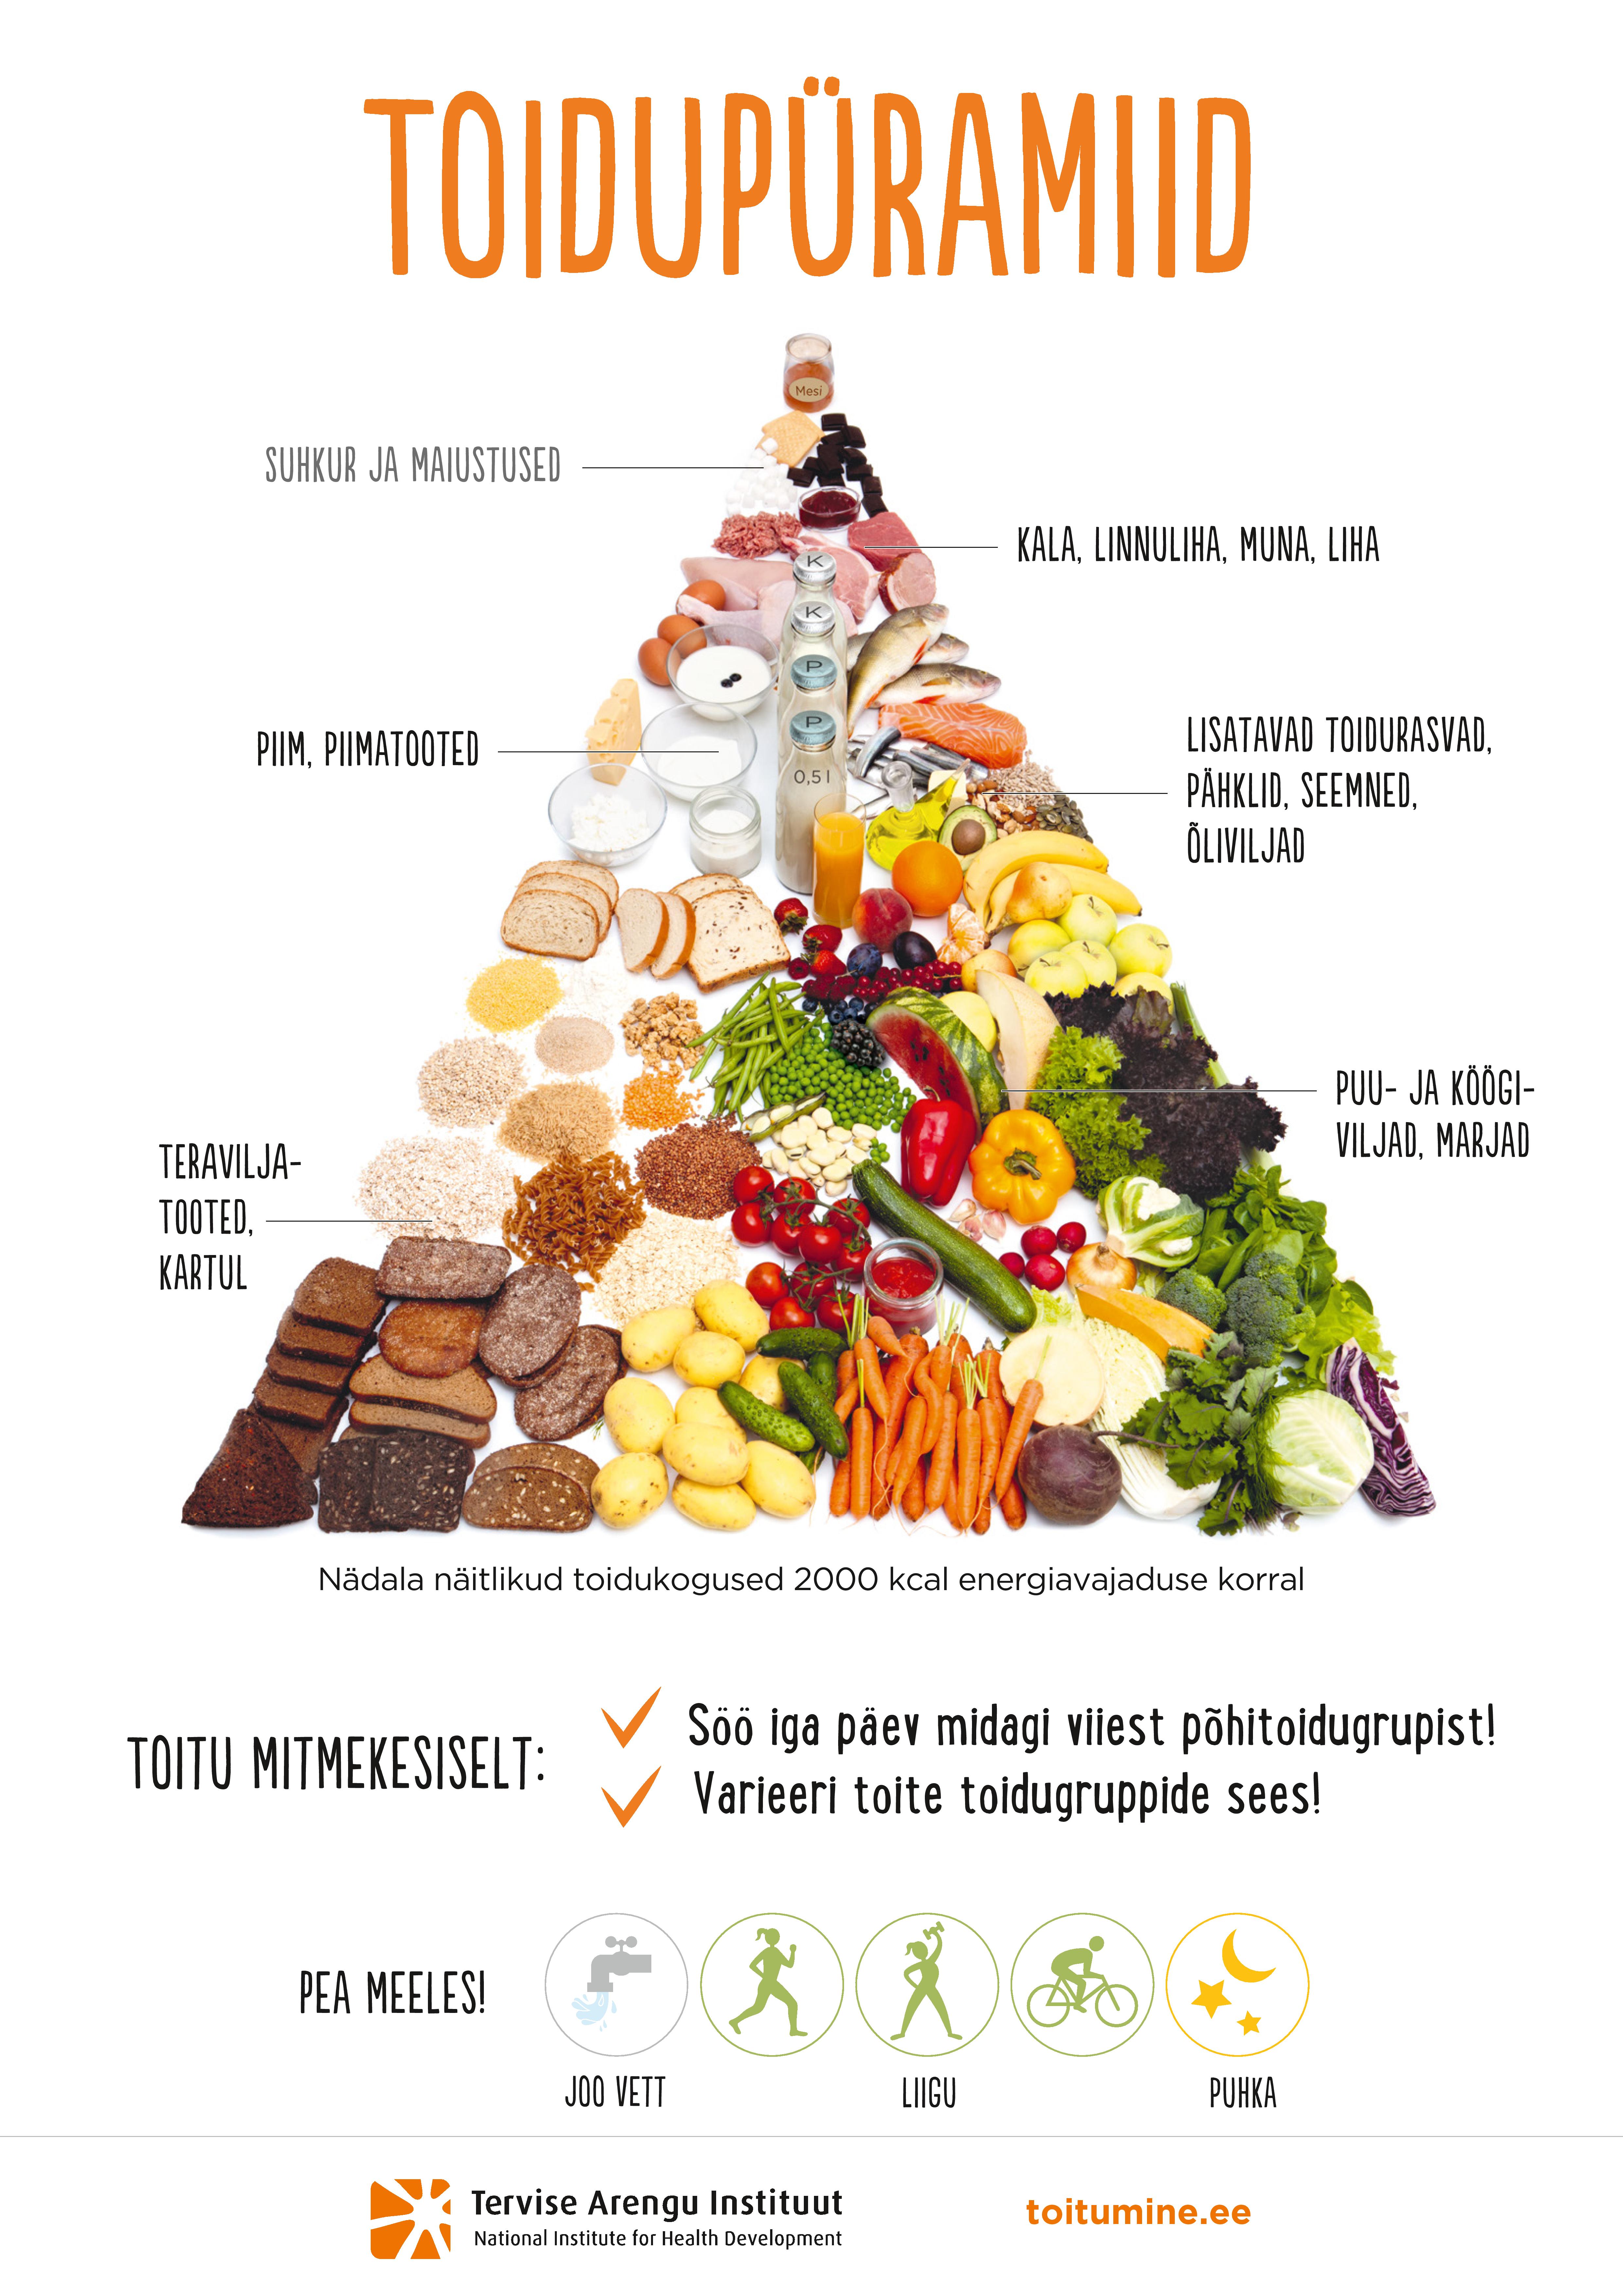 Tervise Arengu Instituut (2016): Toidupüramiid näitab visuaalselt nädala toidukoguseid umbes 2000 kcal energiasoovituse juures, mis aitab toituda tervislikult ja tasakaalustatult.